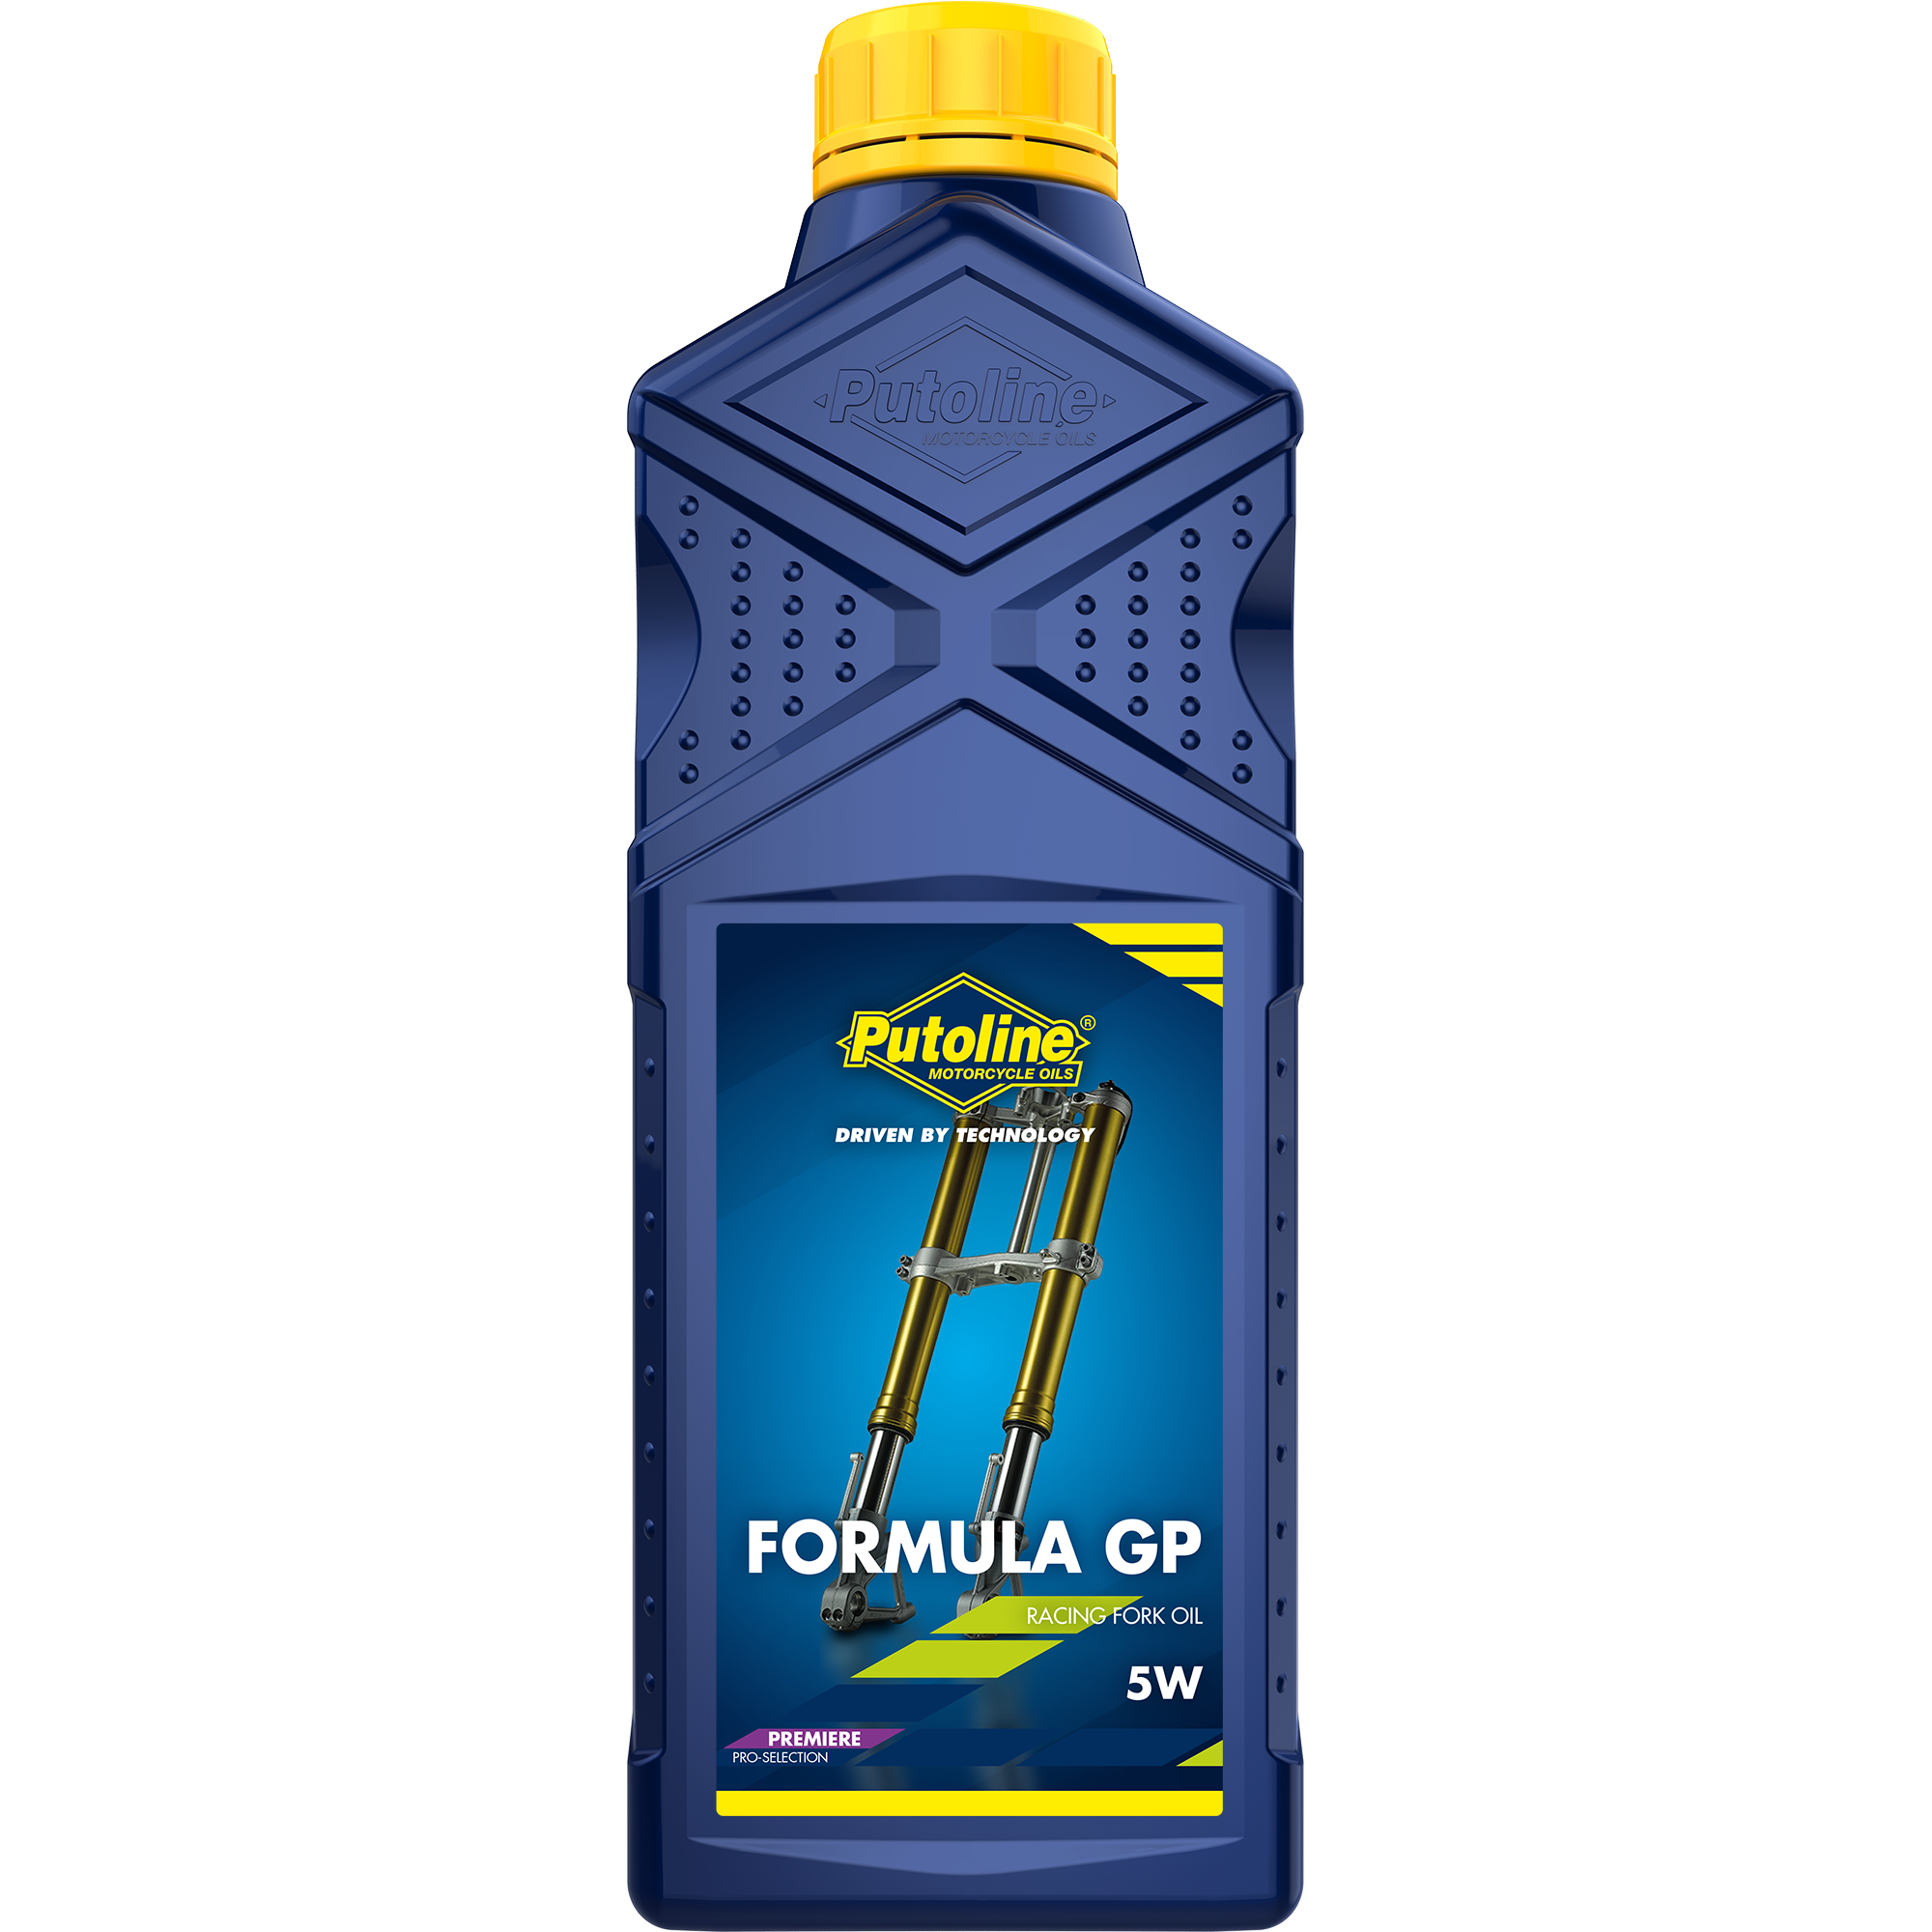 Putoline Formula GP 5W, 1 lt